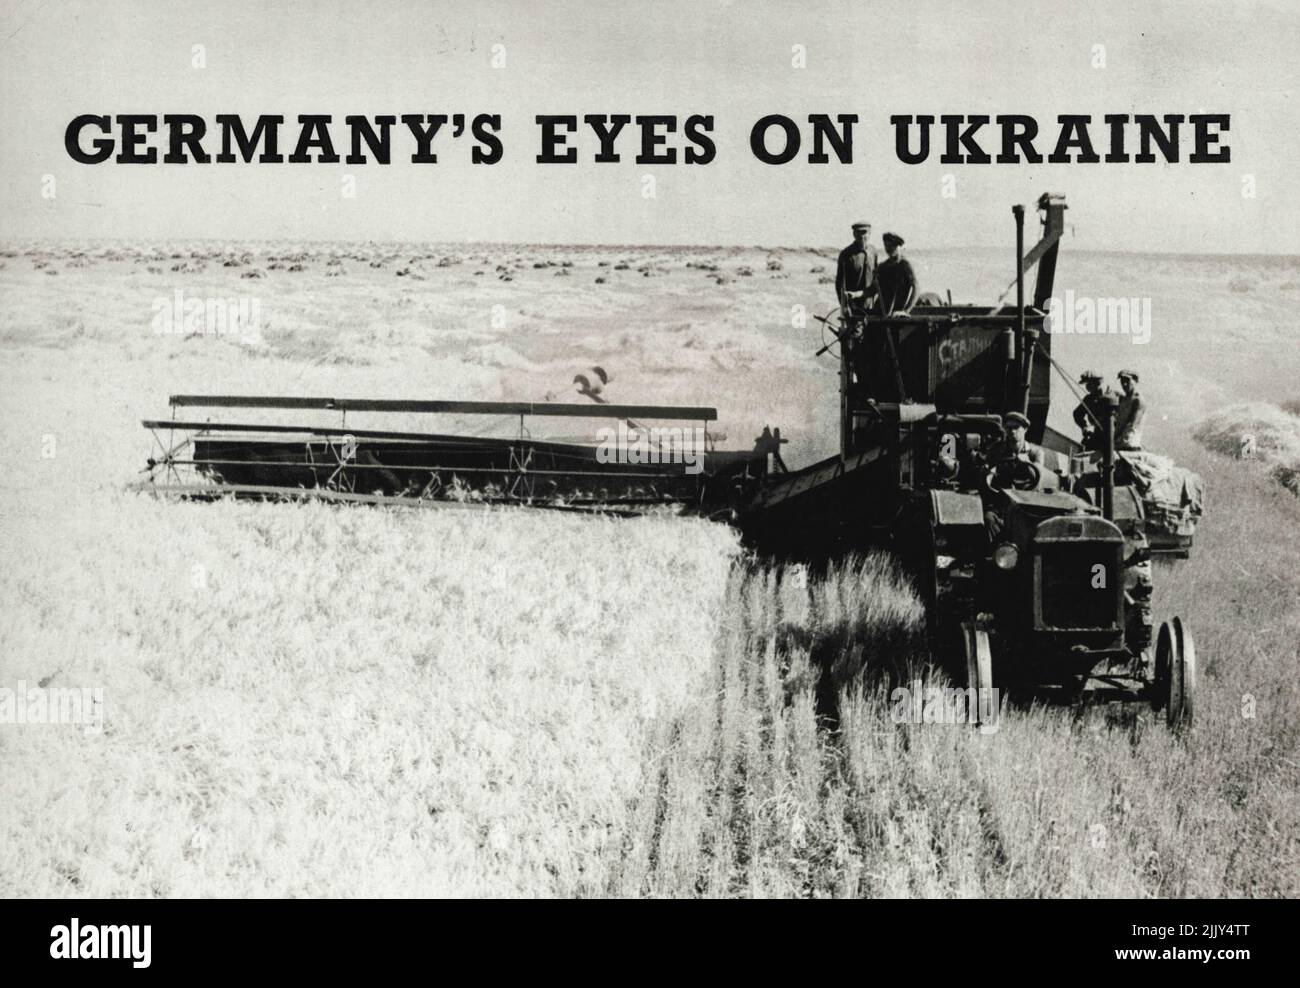 Gli occhi della Germania sull'Ucraina. Mietitura del grano invernale con una mietitrebbia 'Stalinets'. Questo ***** la mietitura è stata altamente meccanizzata ed è stata effettuata quasi esclusivamente con le mietitrebbie. Gli agricoltori collettivi hanno raccolto 30,13 ***** di grano da un ettaro. Lo splendido raccolto raccolto raccolto quest'anno ha portato le fattorie collettive dell'Unione Sovietica in una nuova fase di vita prospera e colta. Una delle numerose fattorie - la Soyatel (Sower) Collective Farm nell'Azov - Black Sea Territory (R.S.F.S.R.). Dicembre 01, 1937. Foto Stock